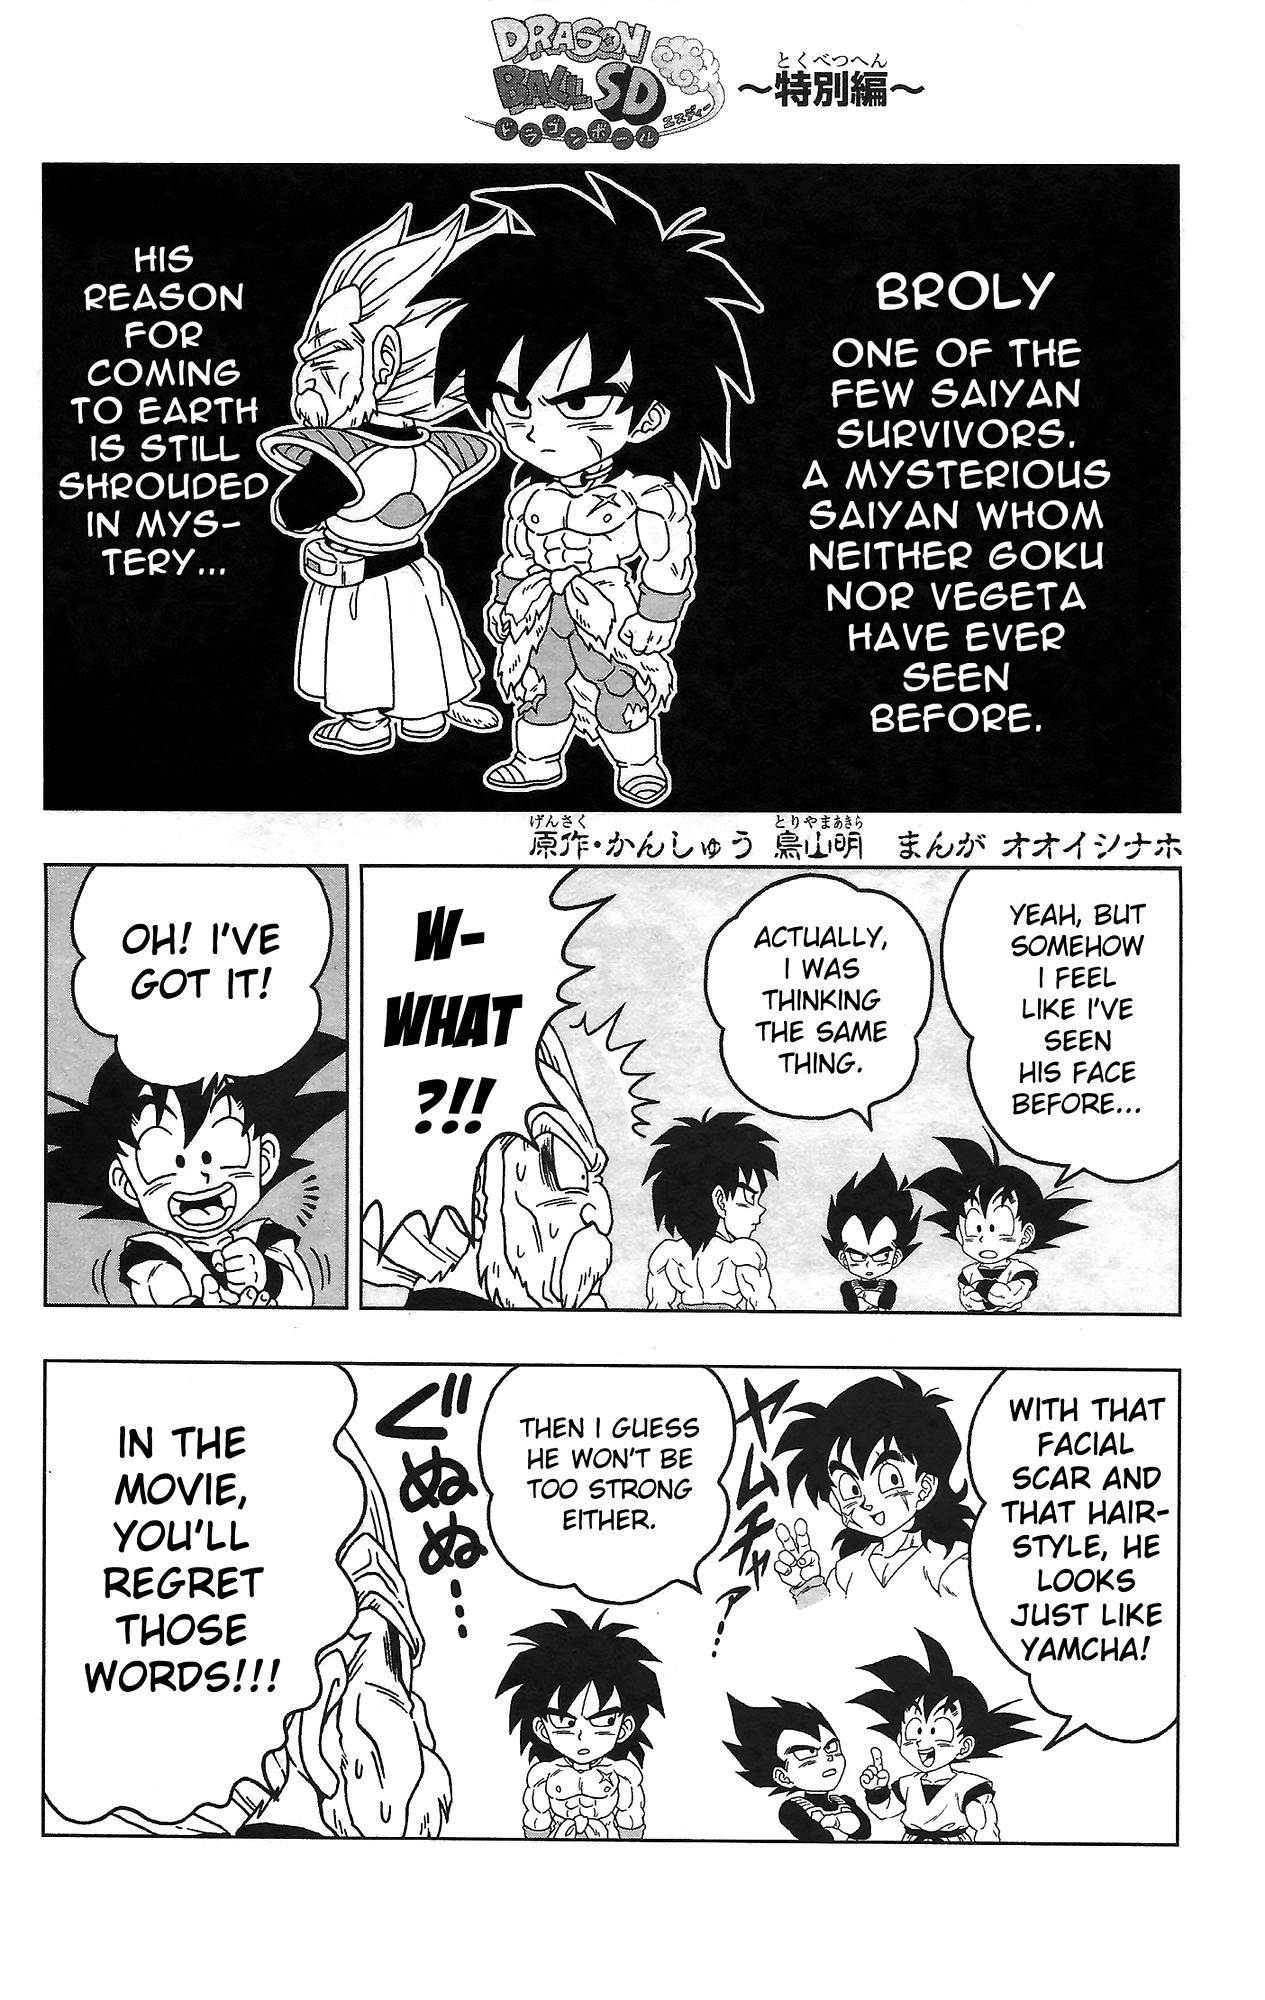 Dragon Ball SD Manga